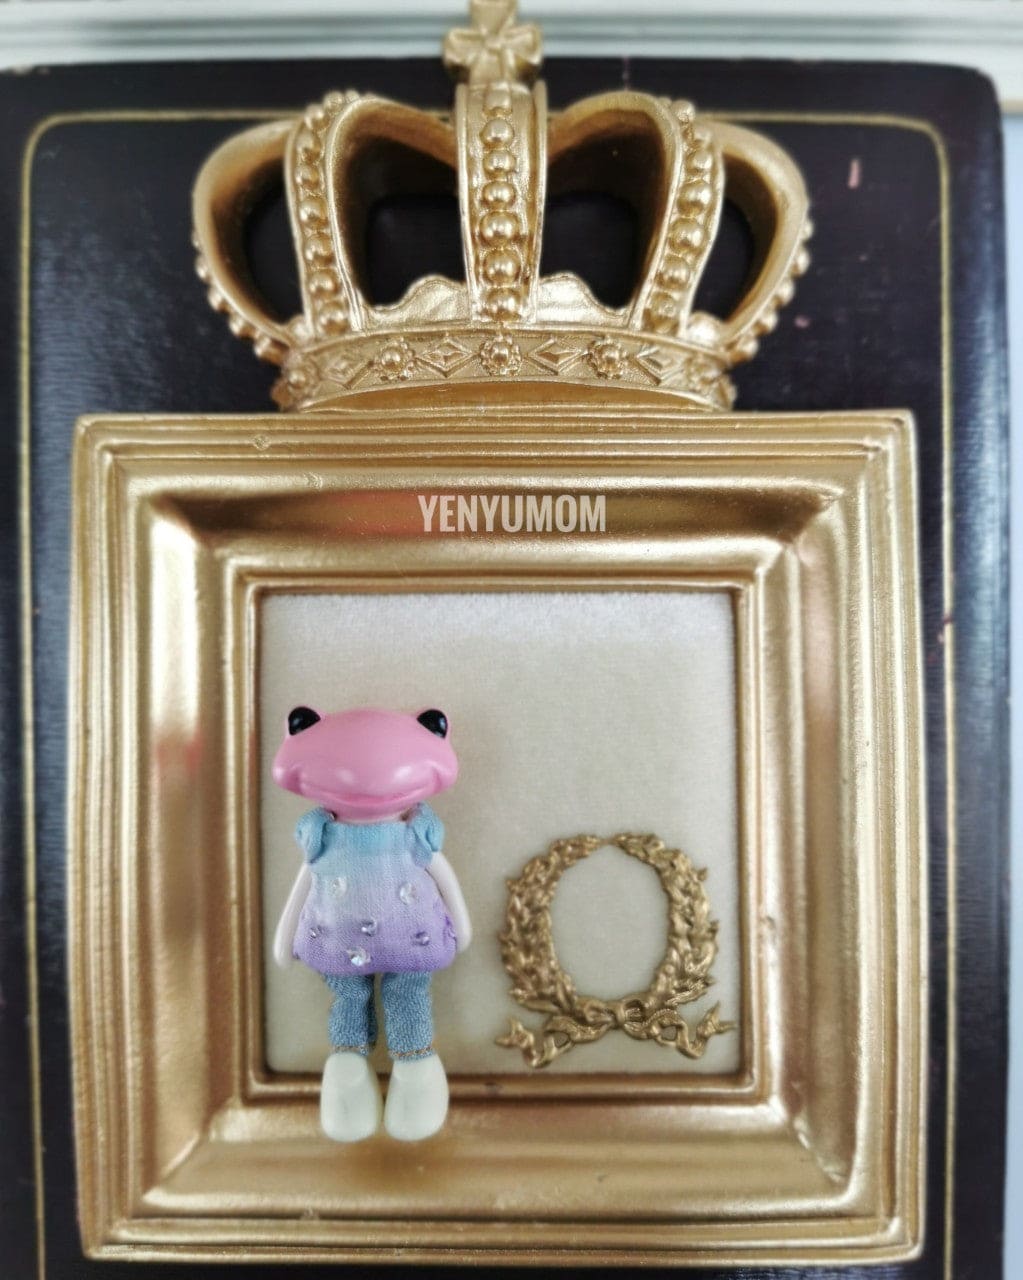 【Yenyumom】Hand Dyed Top & Trousers Set / Furtune Wanda Friends Wonder Frog